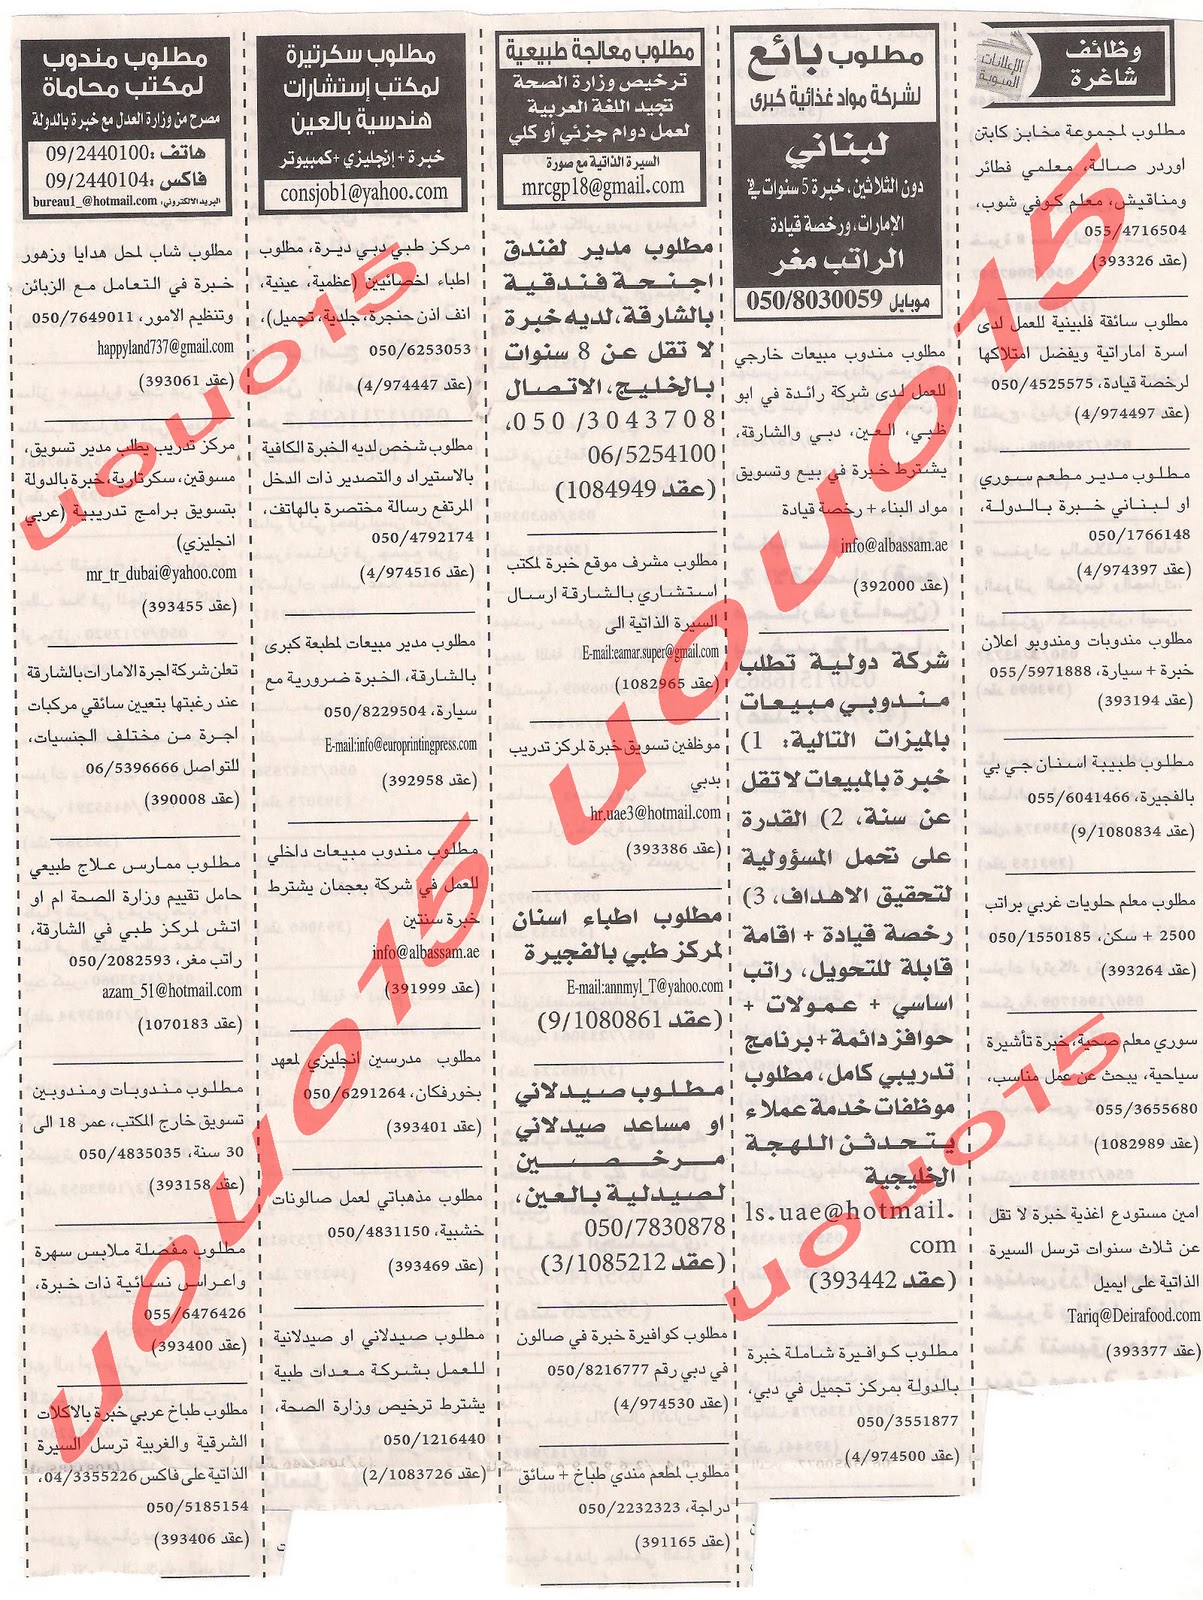 وظائف شاغرة من جريدة الخليج الجمعة 23\12\2011  Picture+002